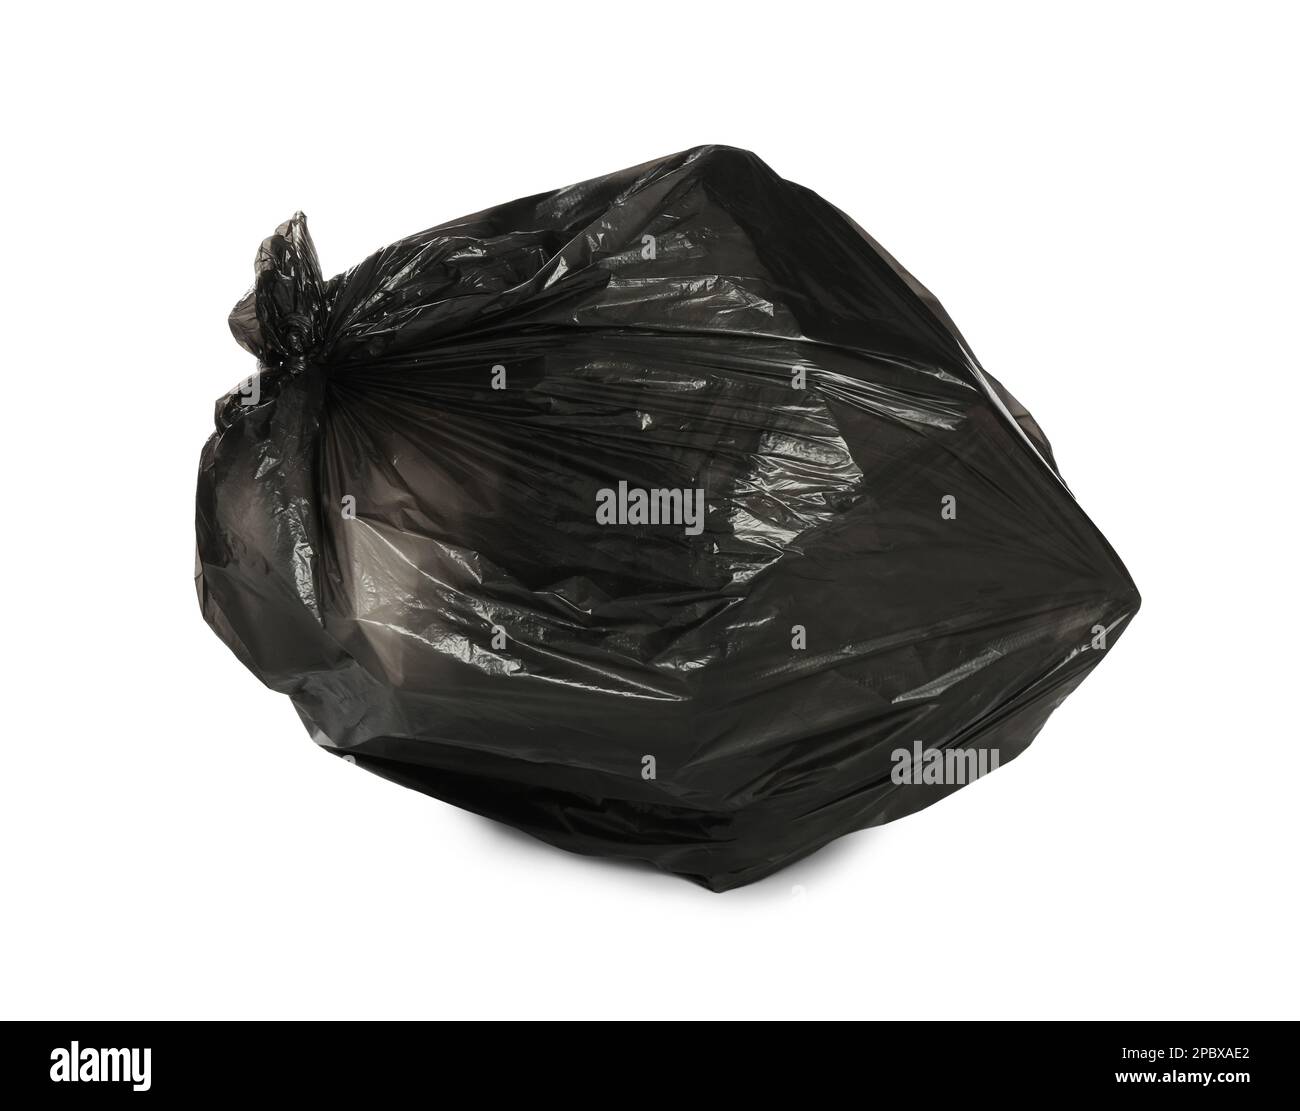 Sac poubelle noir rempli d'ordures isolées sur blanc Banque D'Images